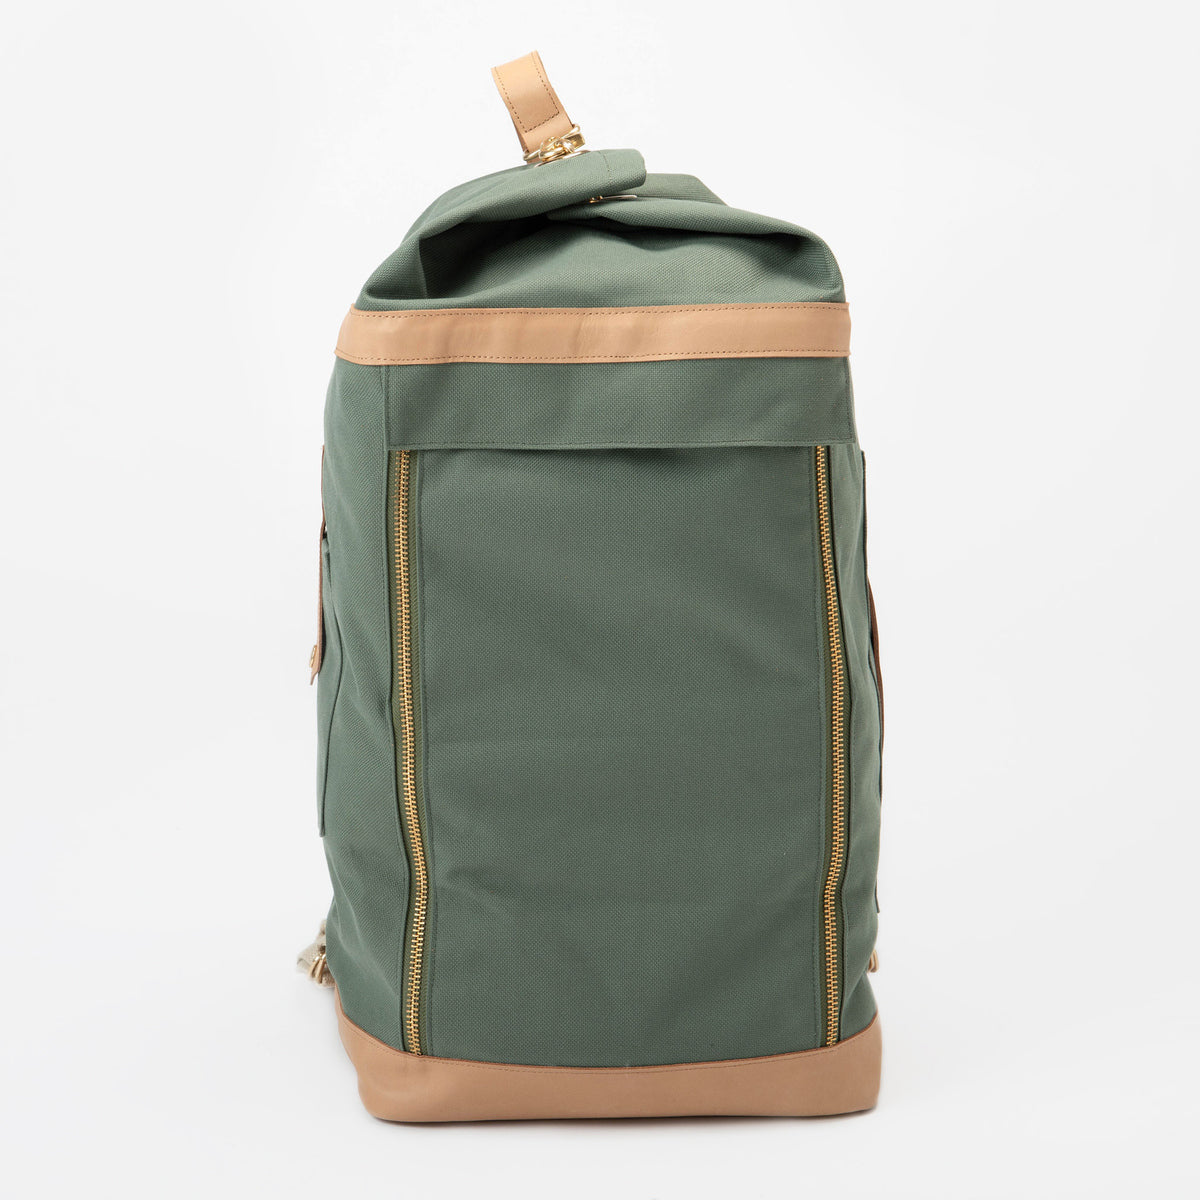 Green Weekend Bag